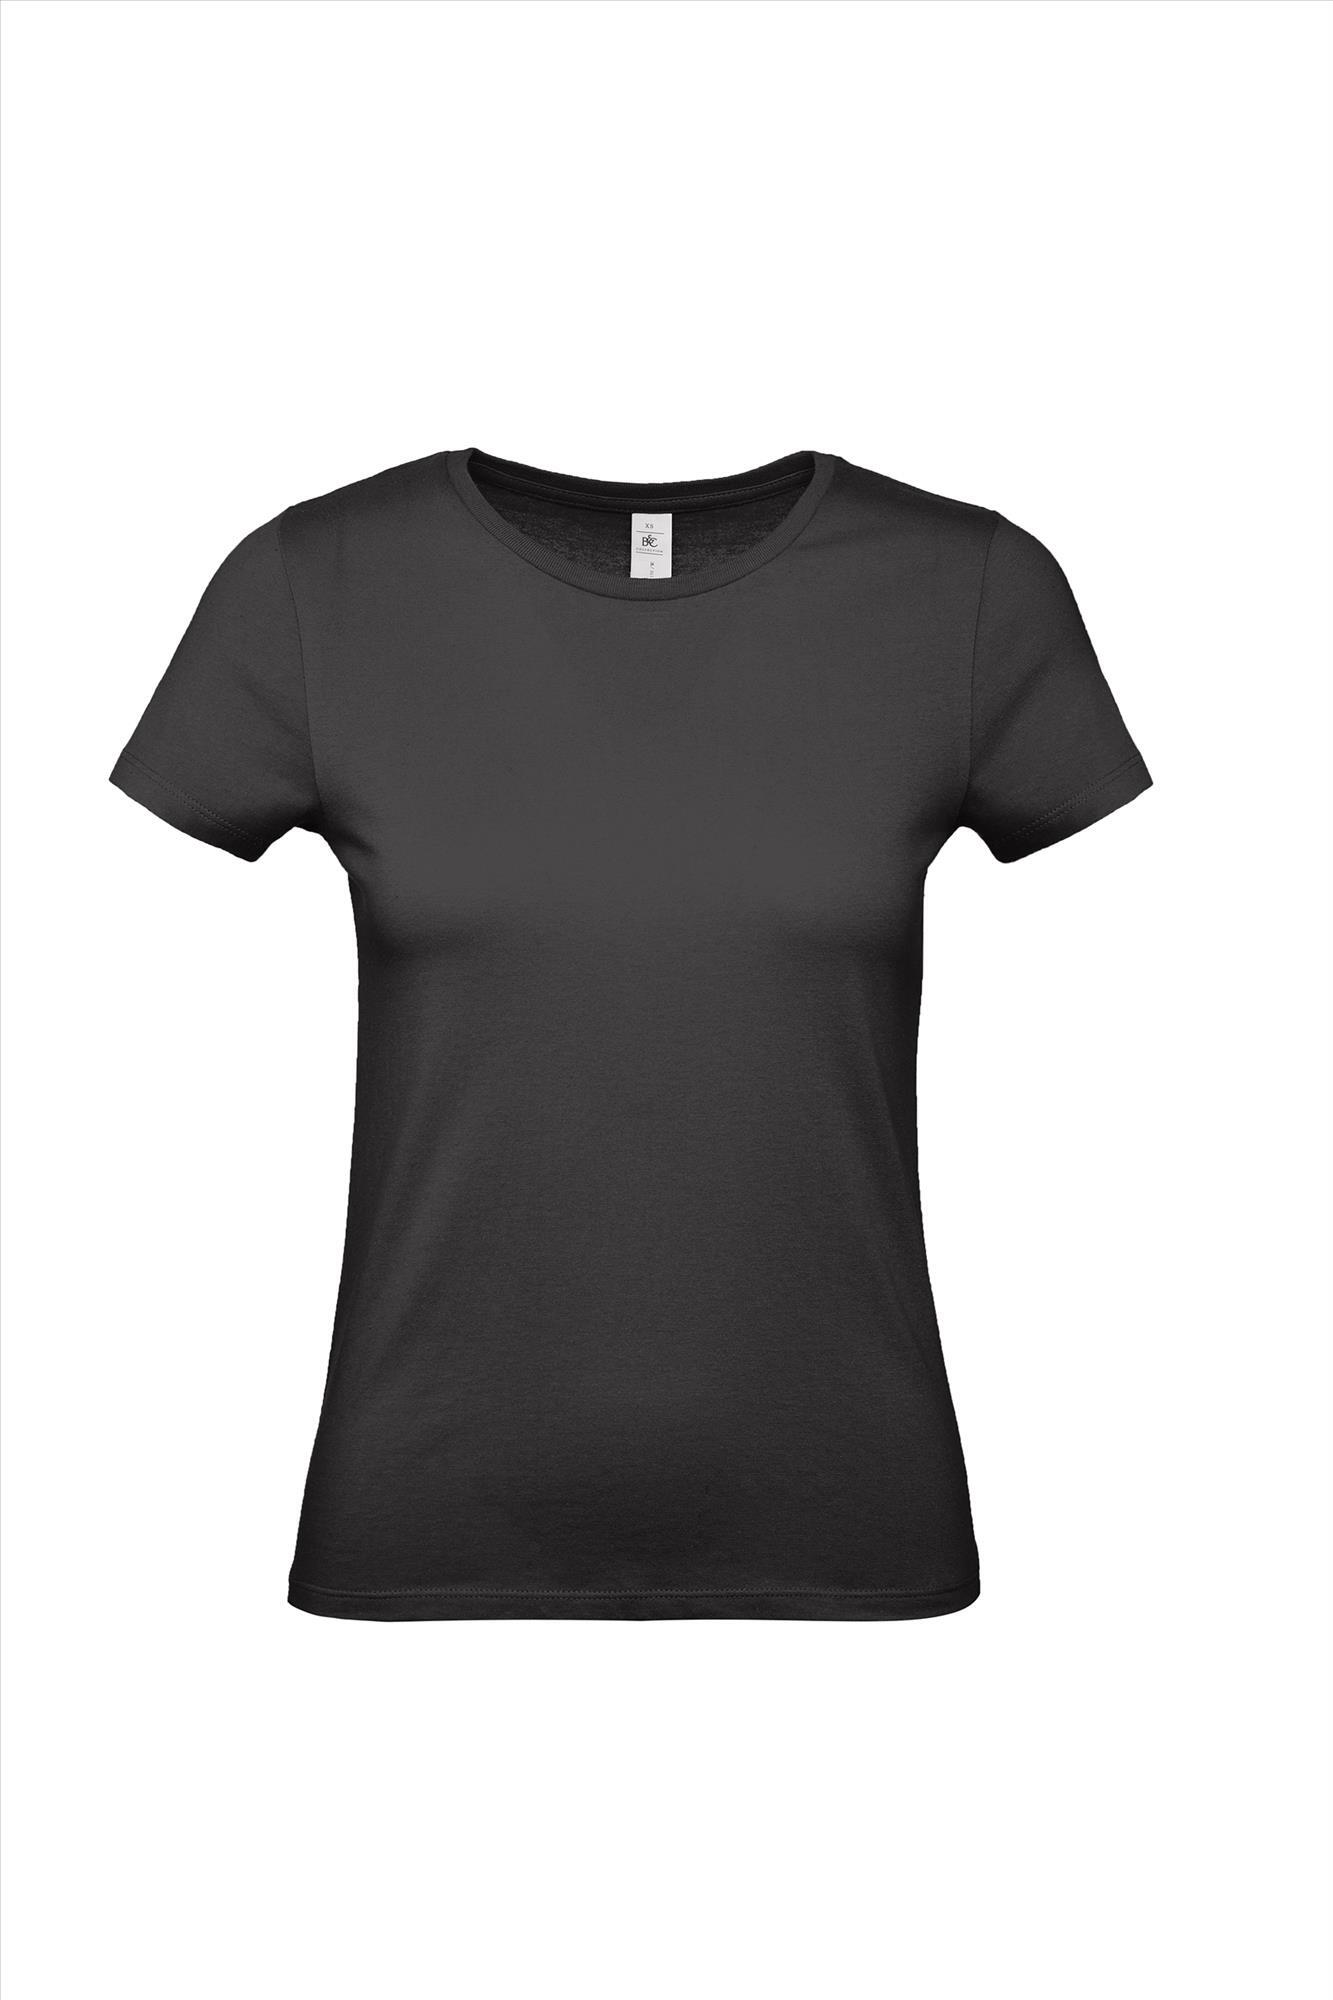 Modern T-shirt voor haar dames shirt zwart